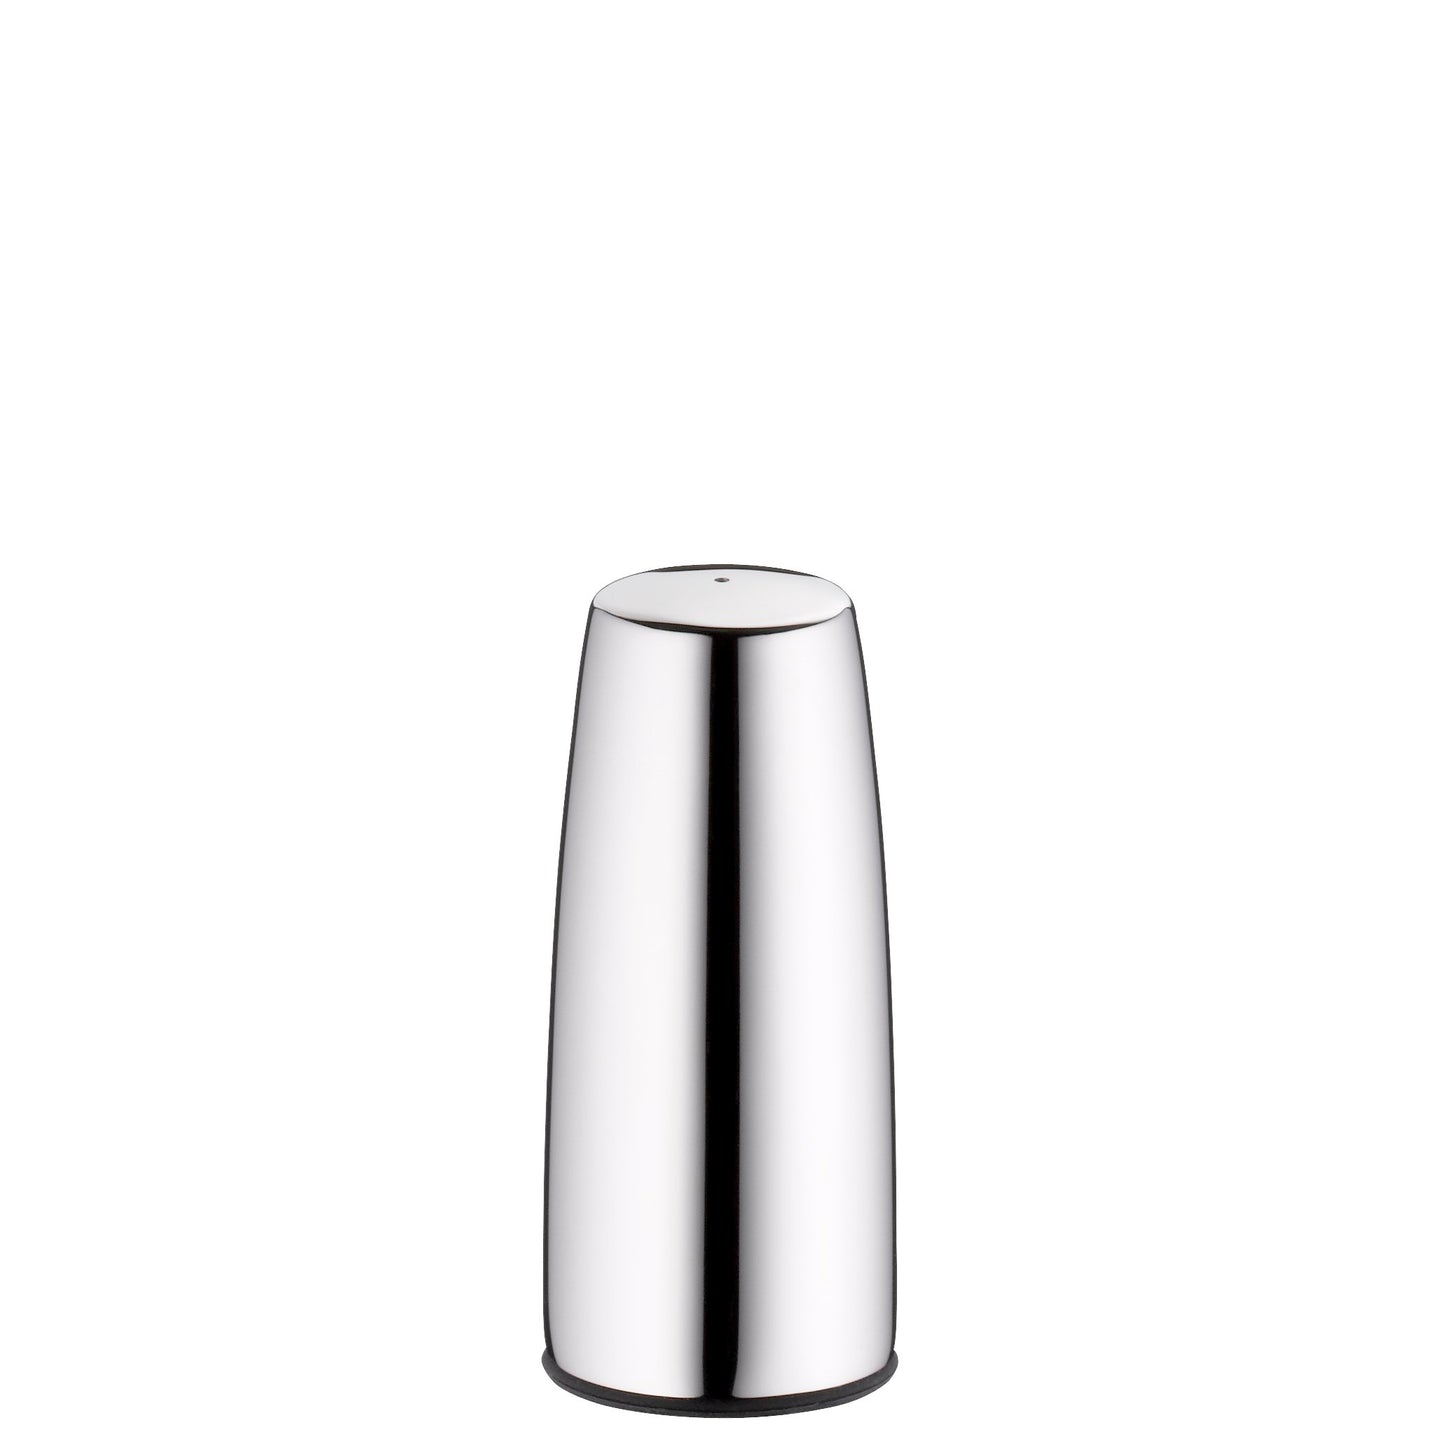 Pepper shaker VISION 8 cm